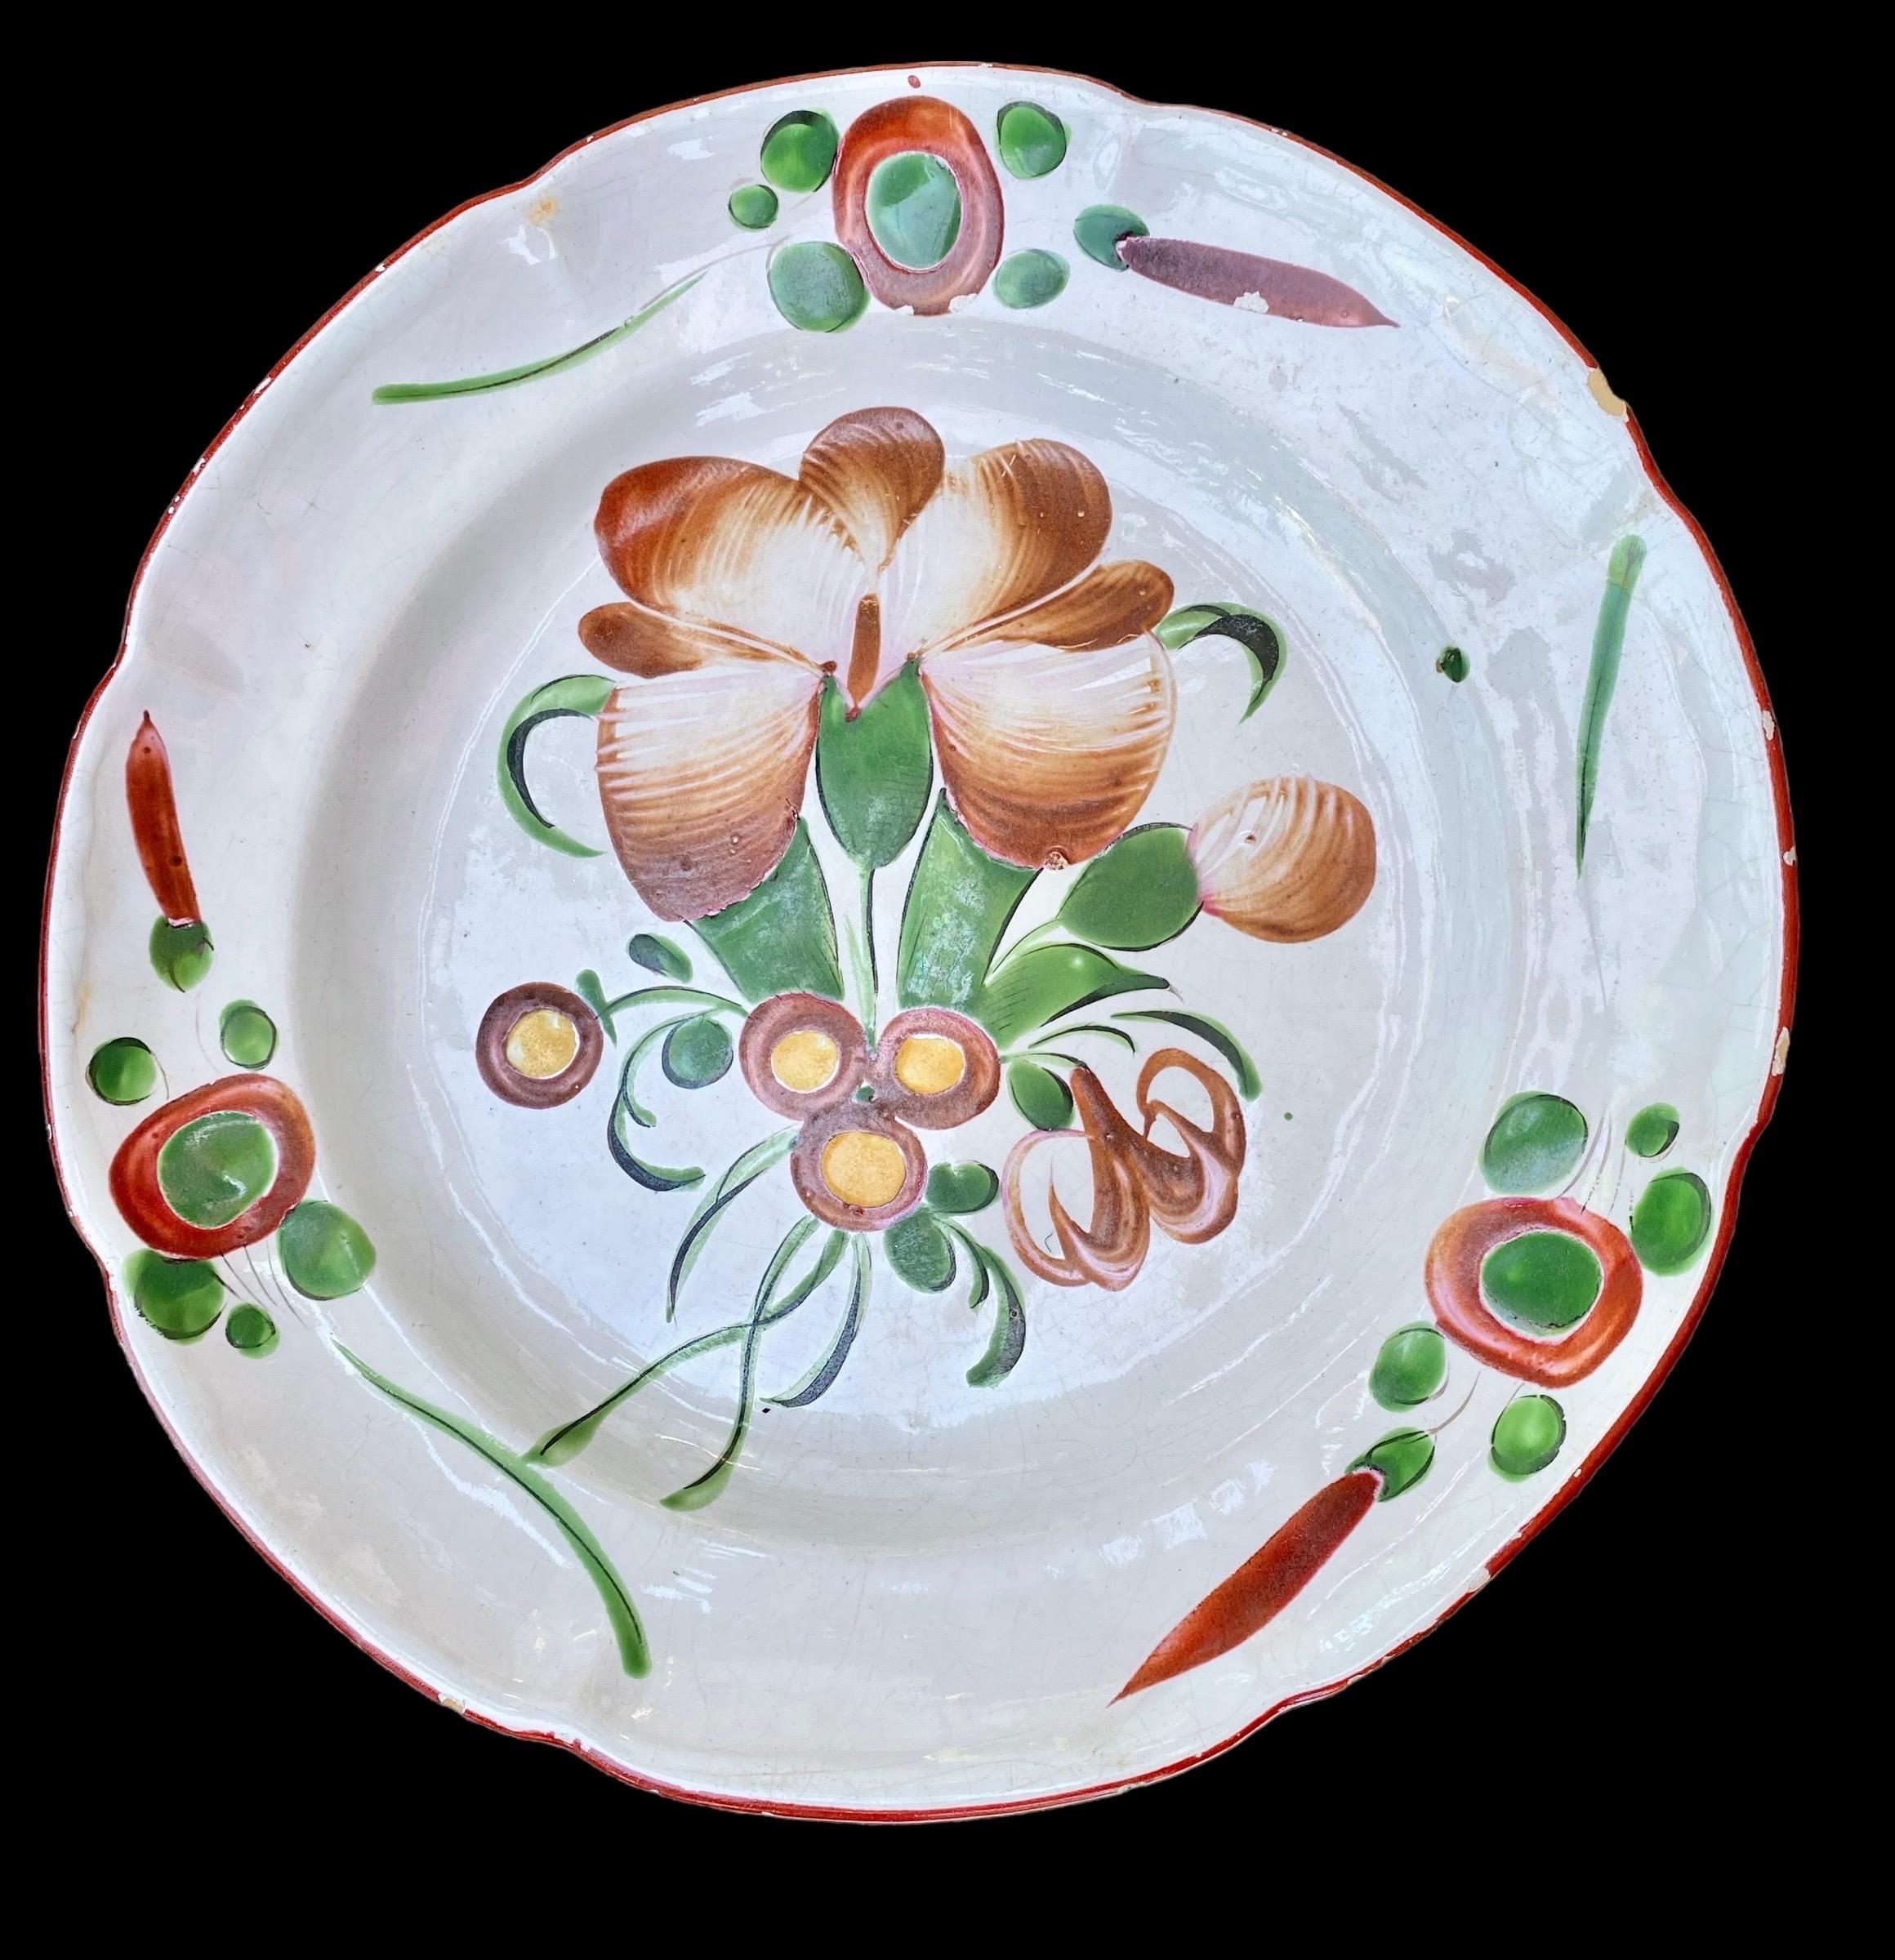 Chargeur ou plat en faïence française du XIXe siècle, avec un décor floral bordeaux typique peint à la main, provenant de St Clément, dans l'Est de la France. Perte de glaçure mineure. L'ancien support de plaque en laiton est encore attaché. 